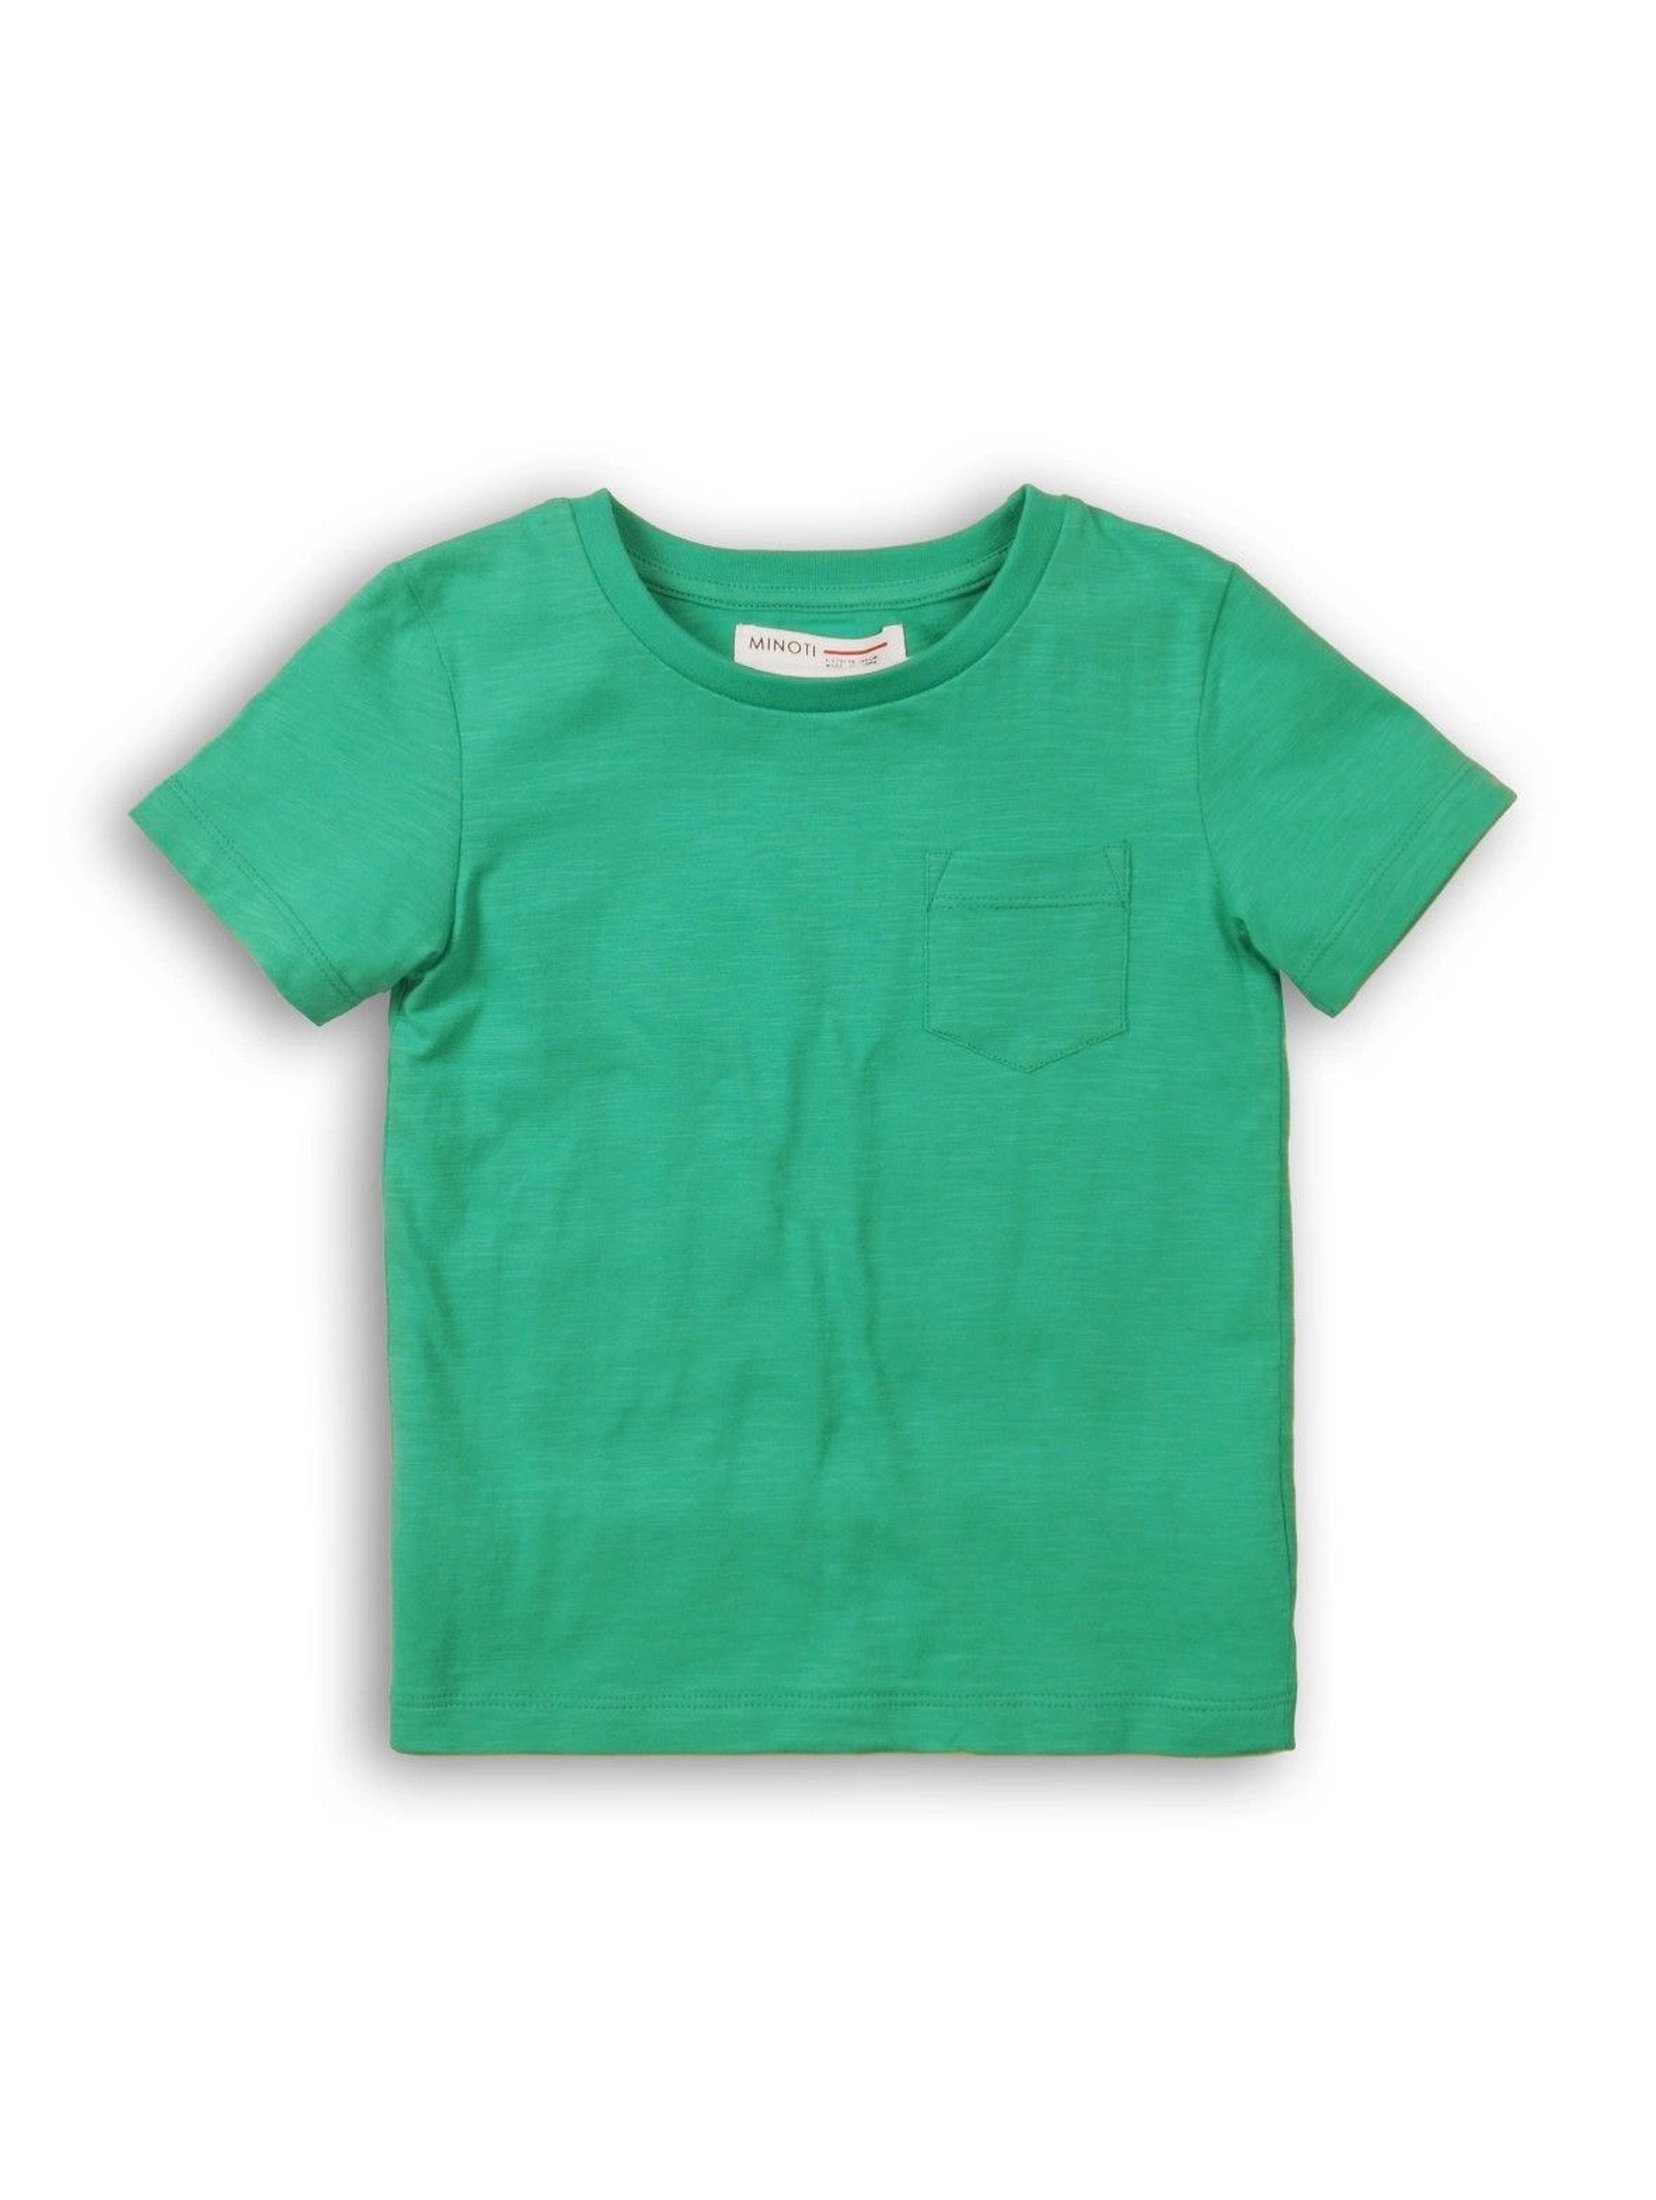 Zielony t-shirt dla niemowlaka